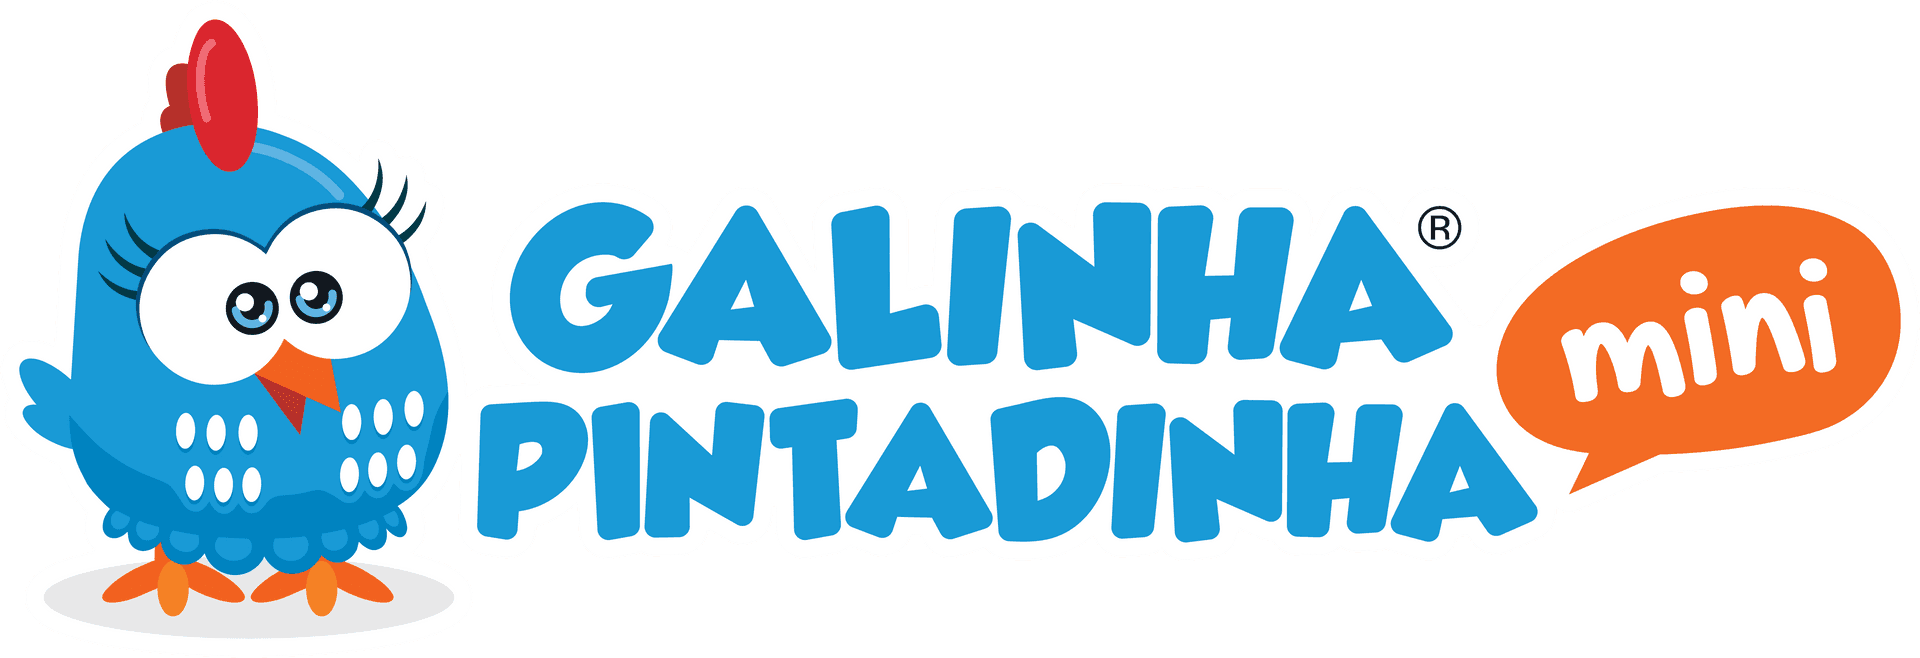 Galinha Pintadinha Mini Logo PNG